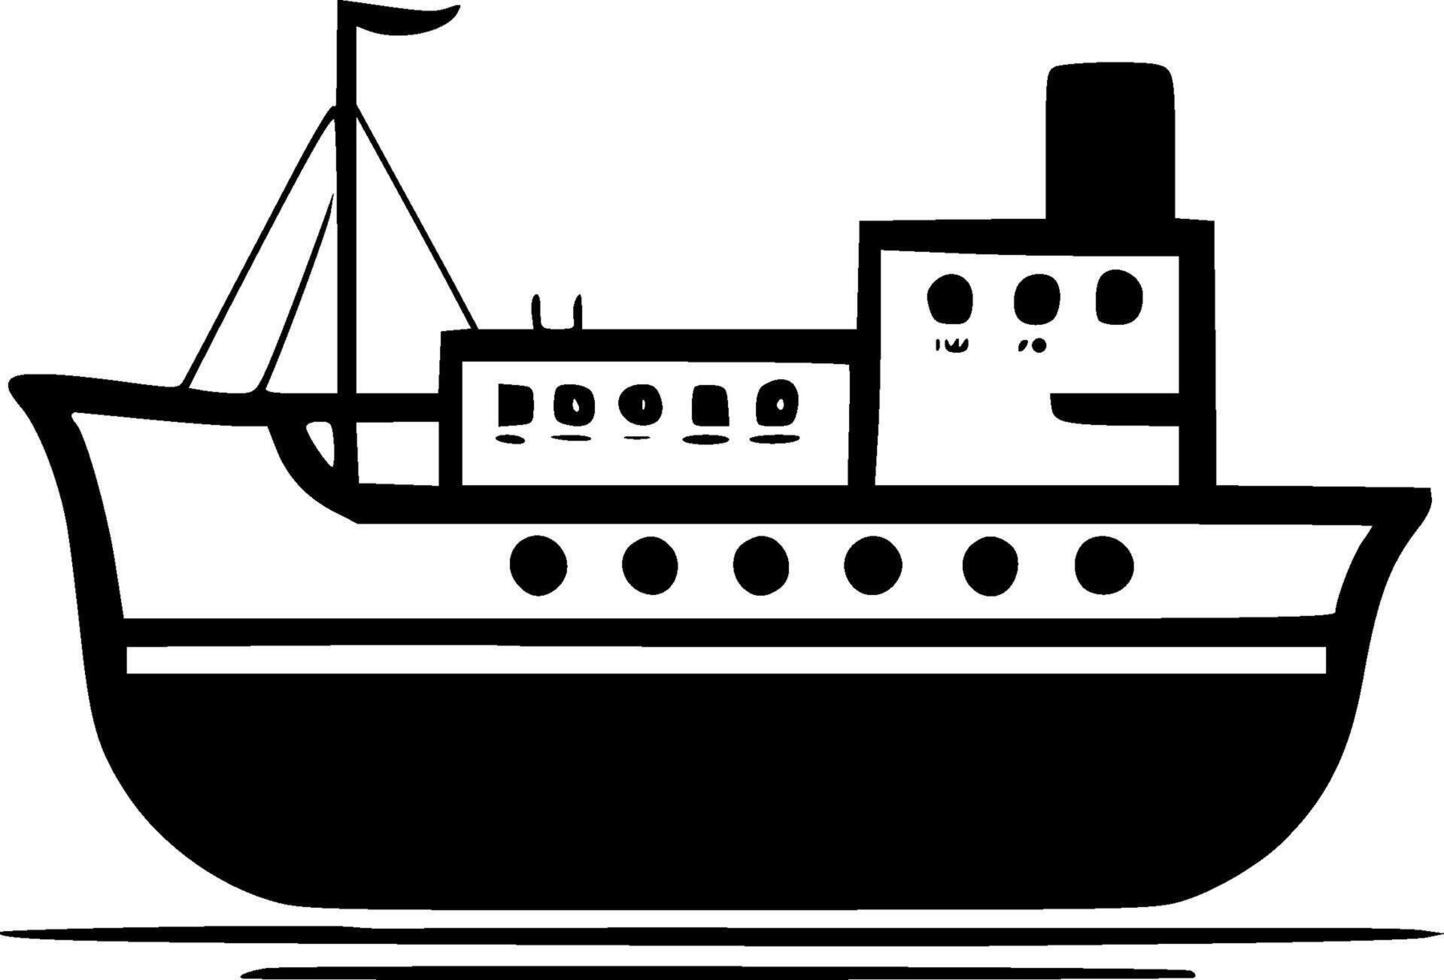 båt, svart och vit vektor illustration